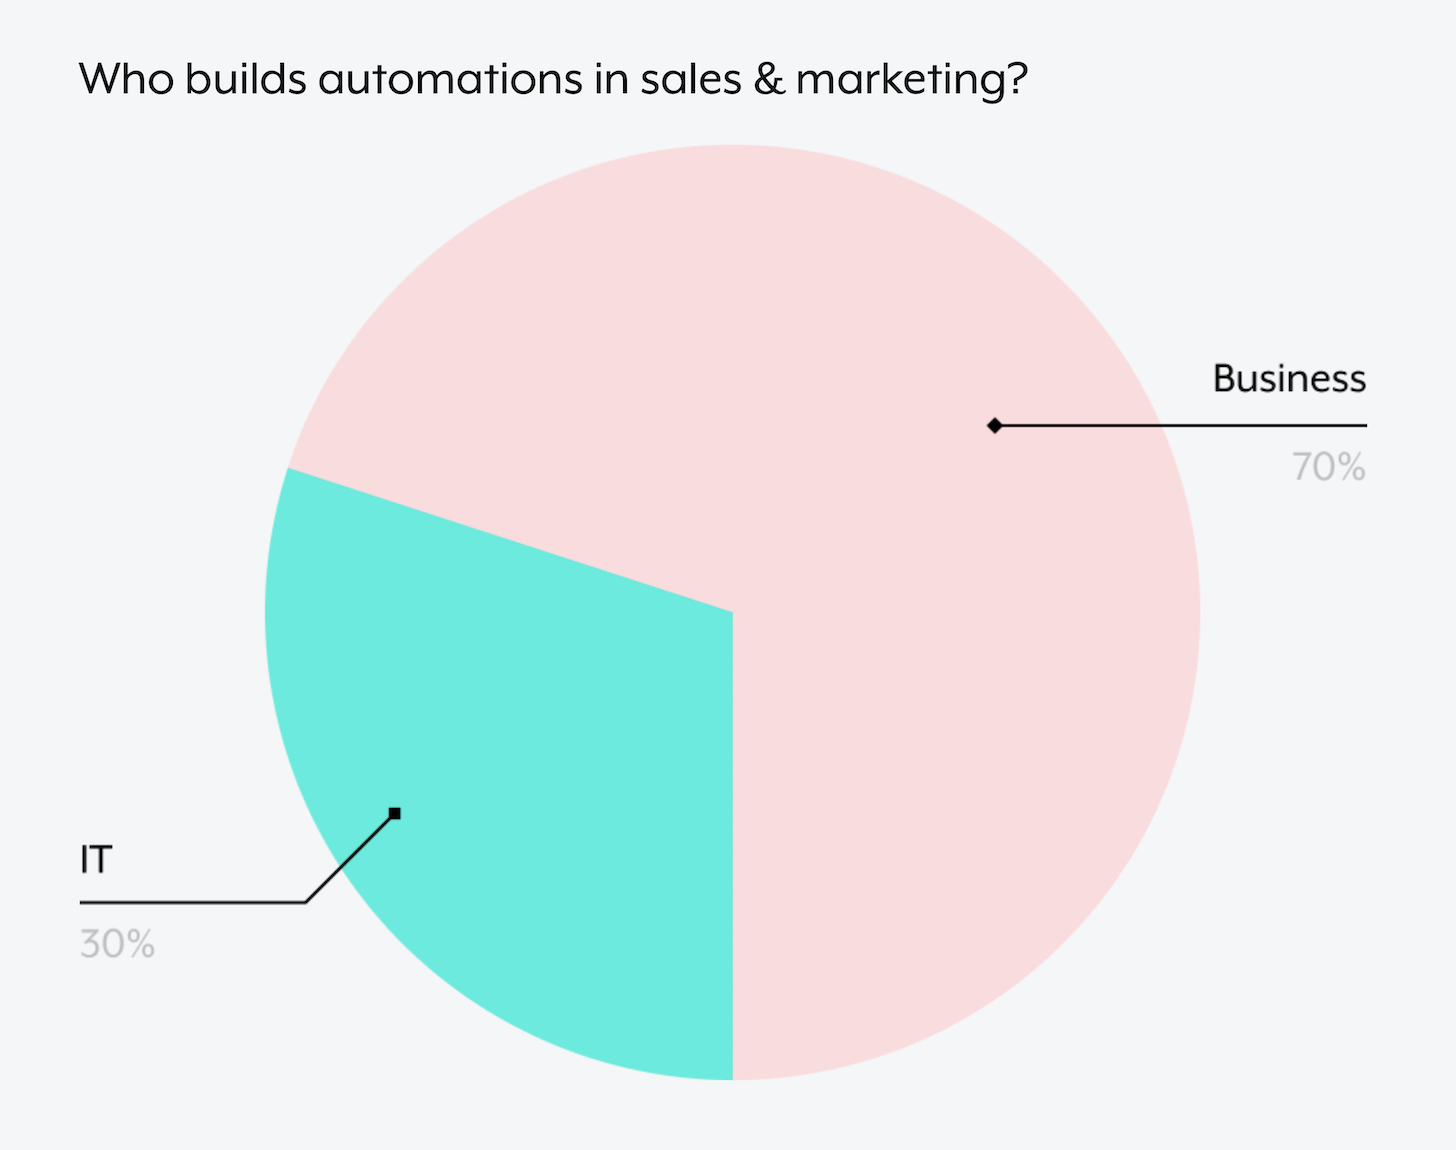 Meer automatiseringen in marketing gebouwd door zakelijke gebruikers in plaats van IT